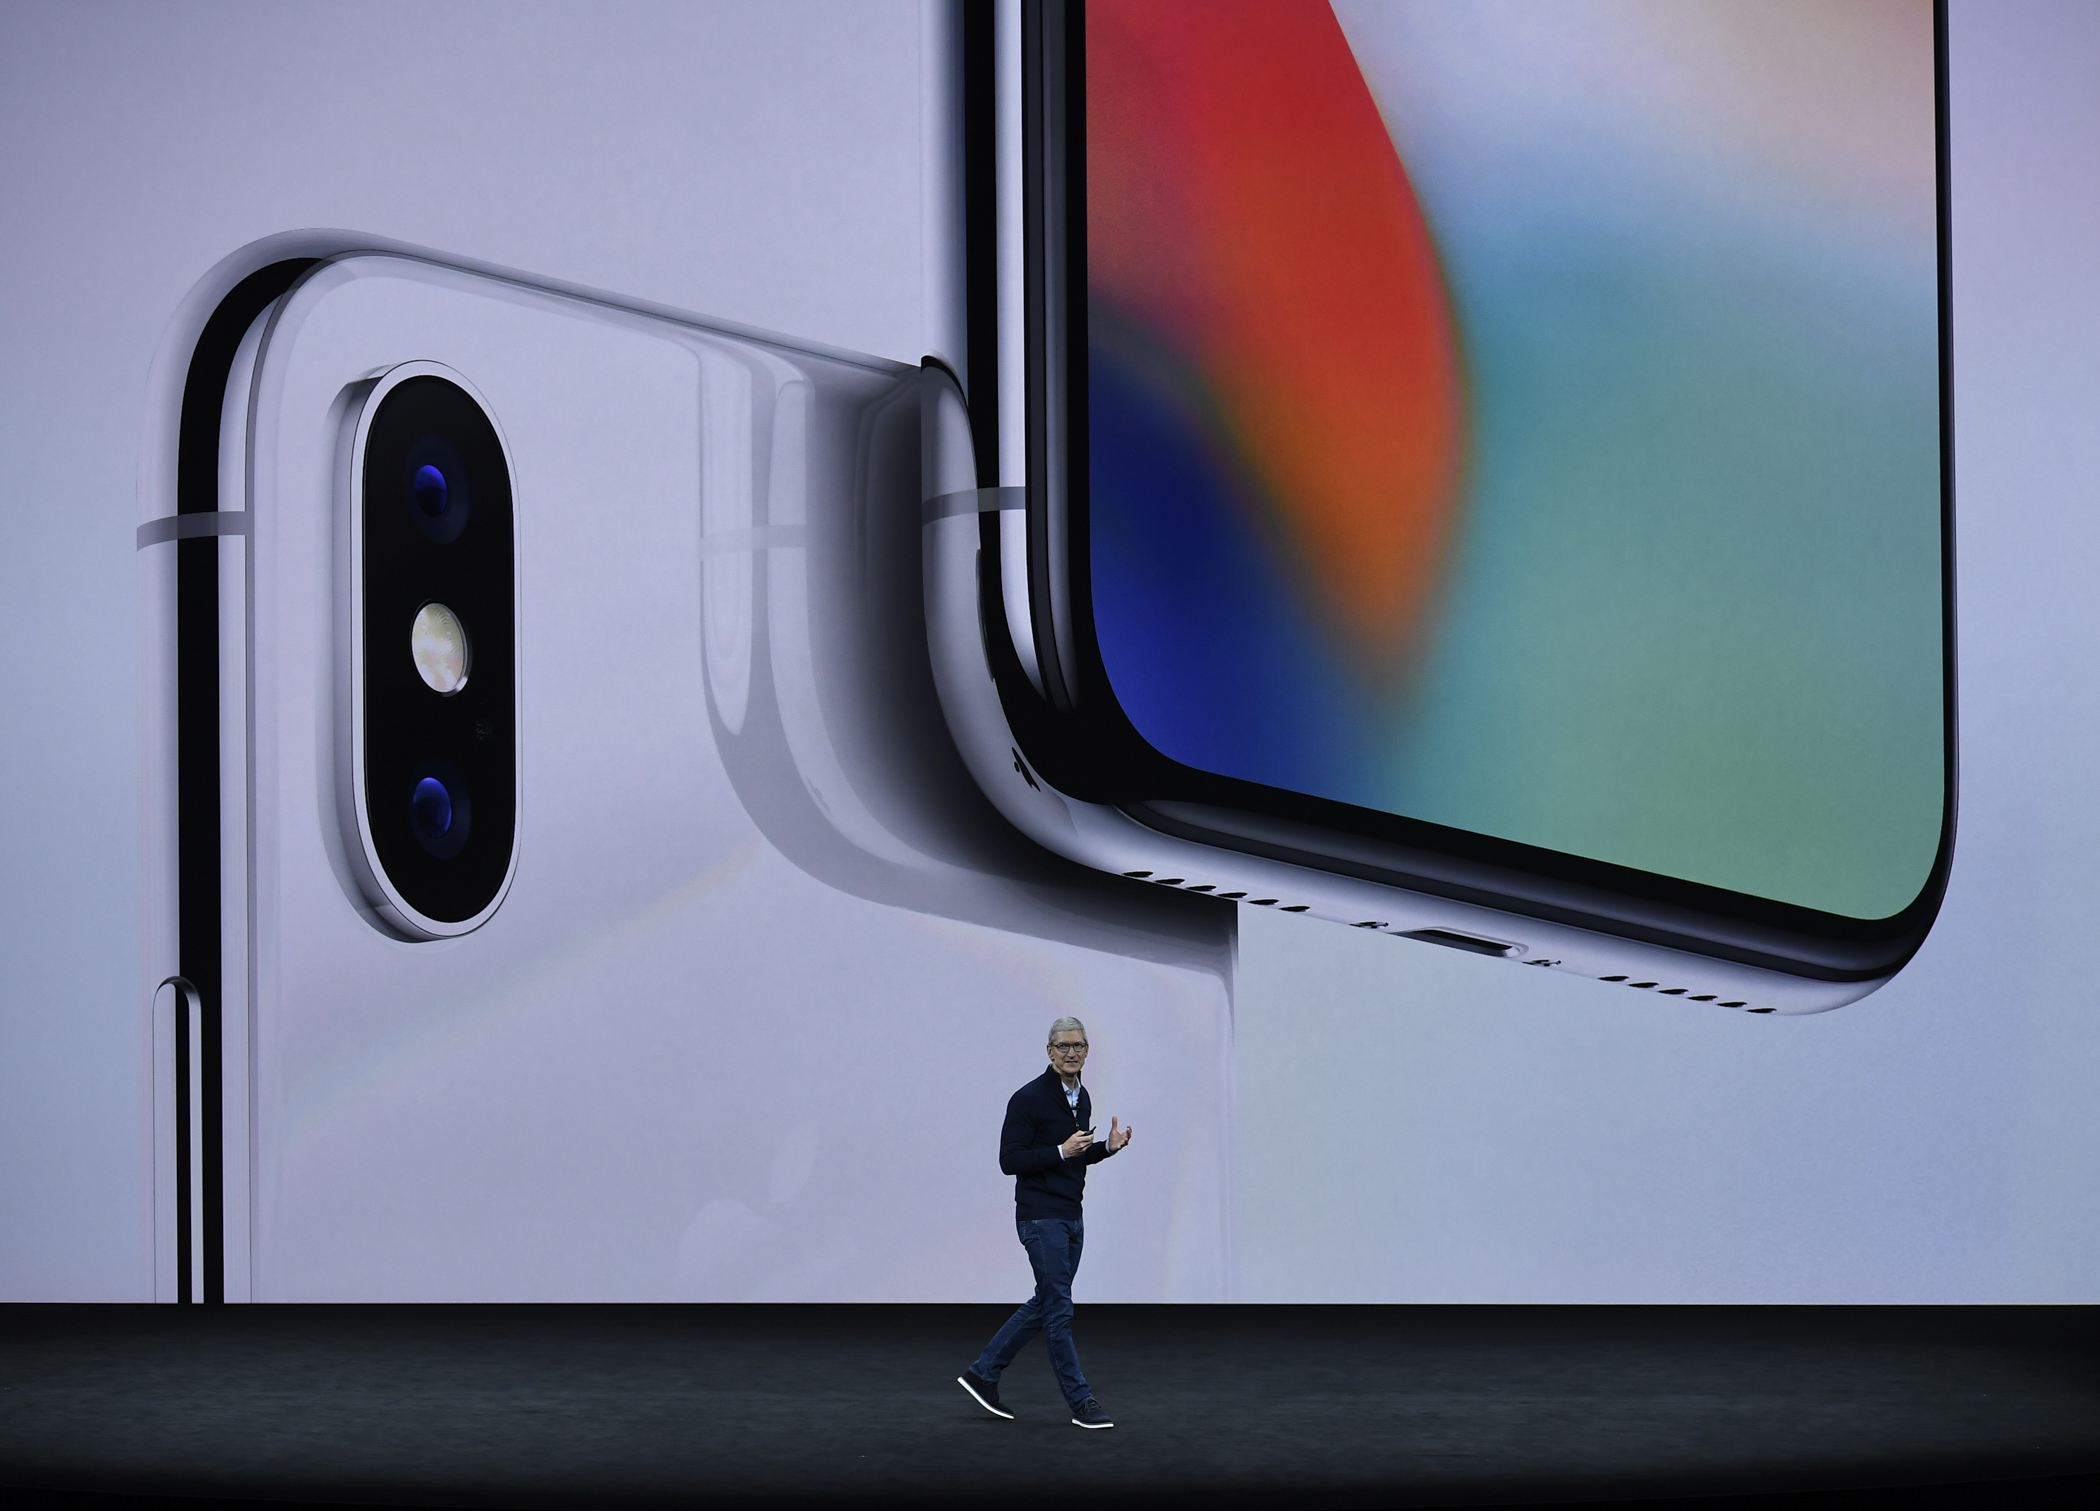 发布会上,苹果公司首席执行官蒂姆·库克介绍新推出的苹果手机iphone